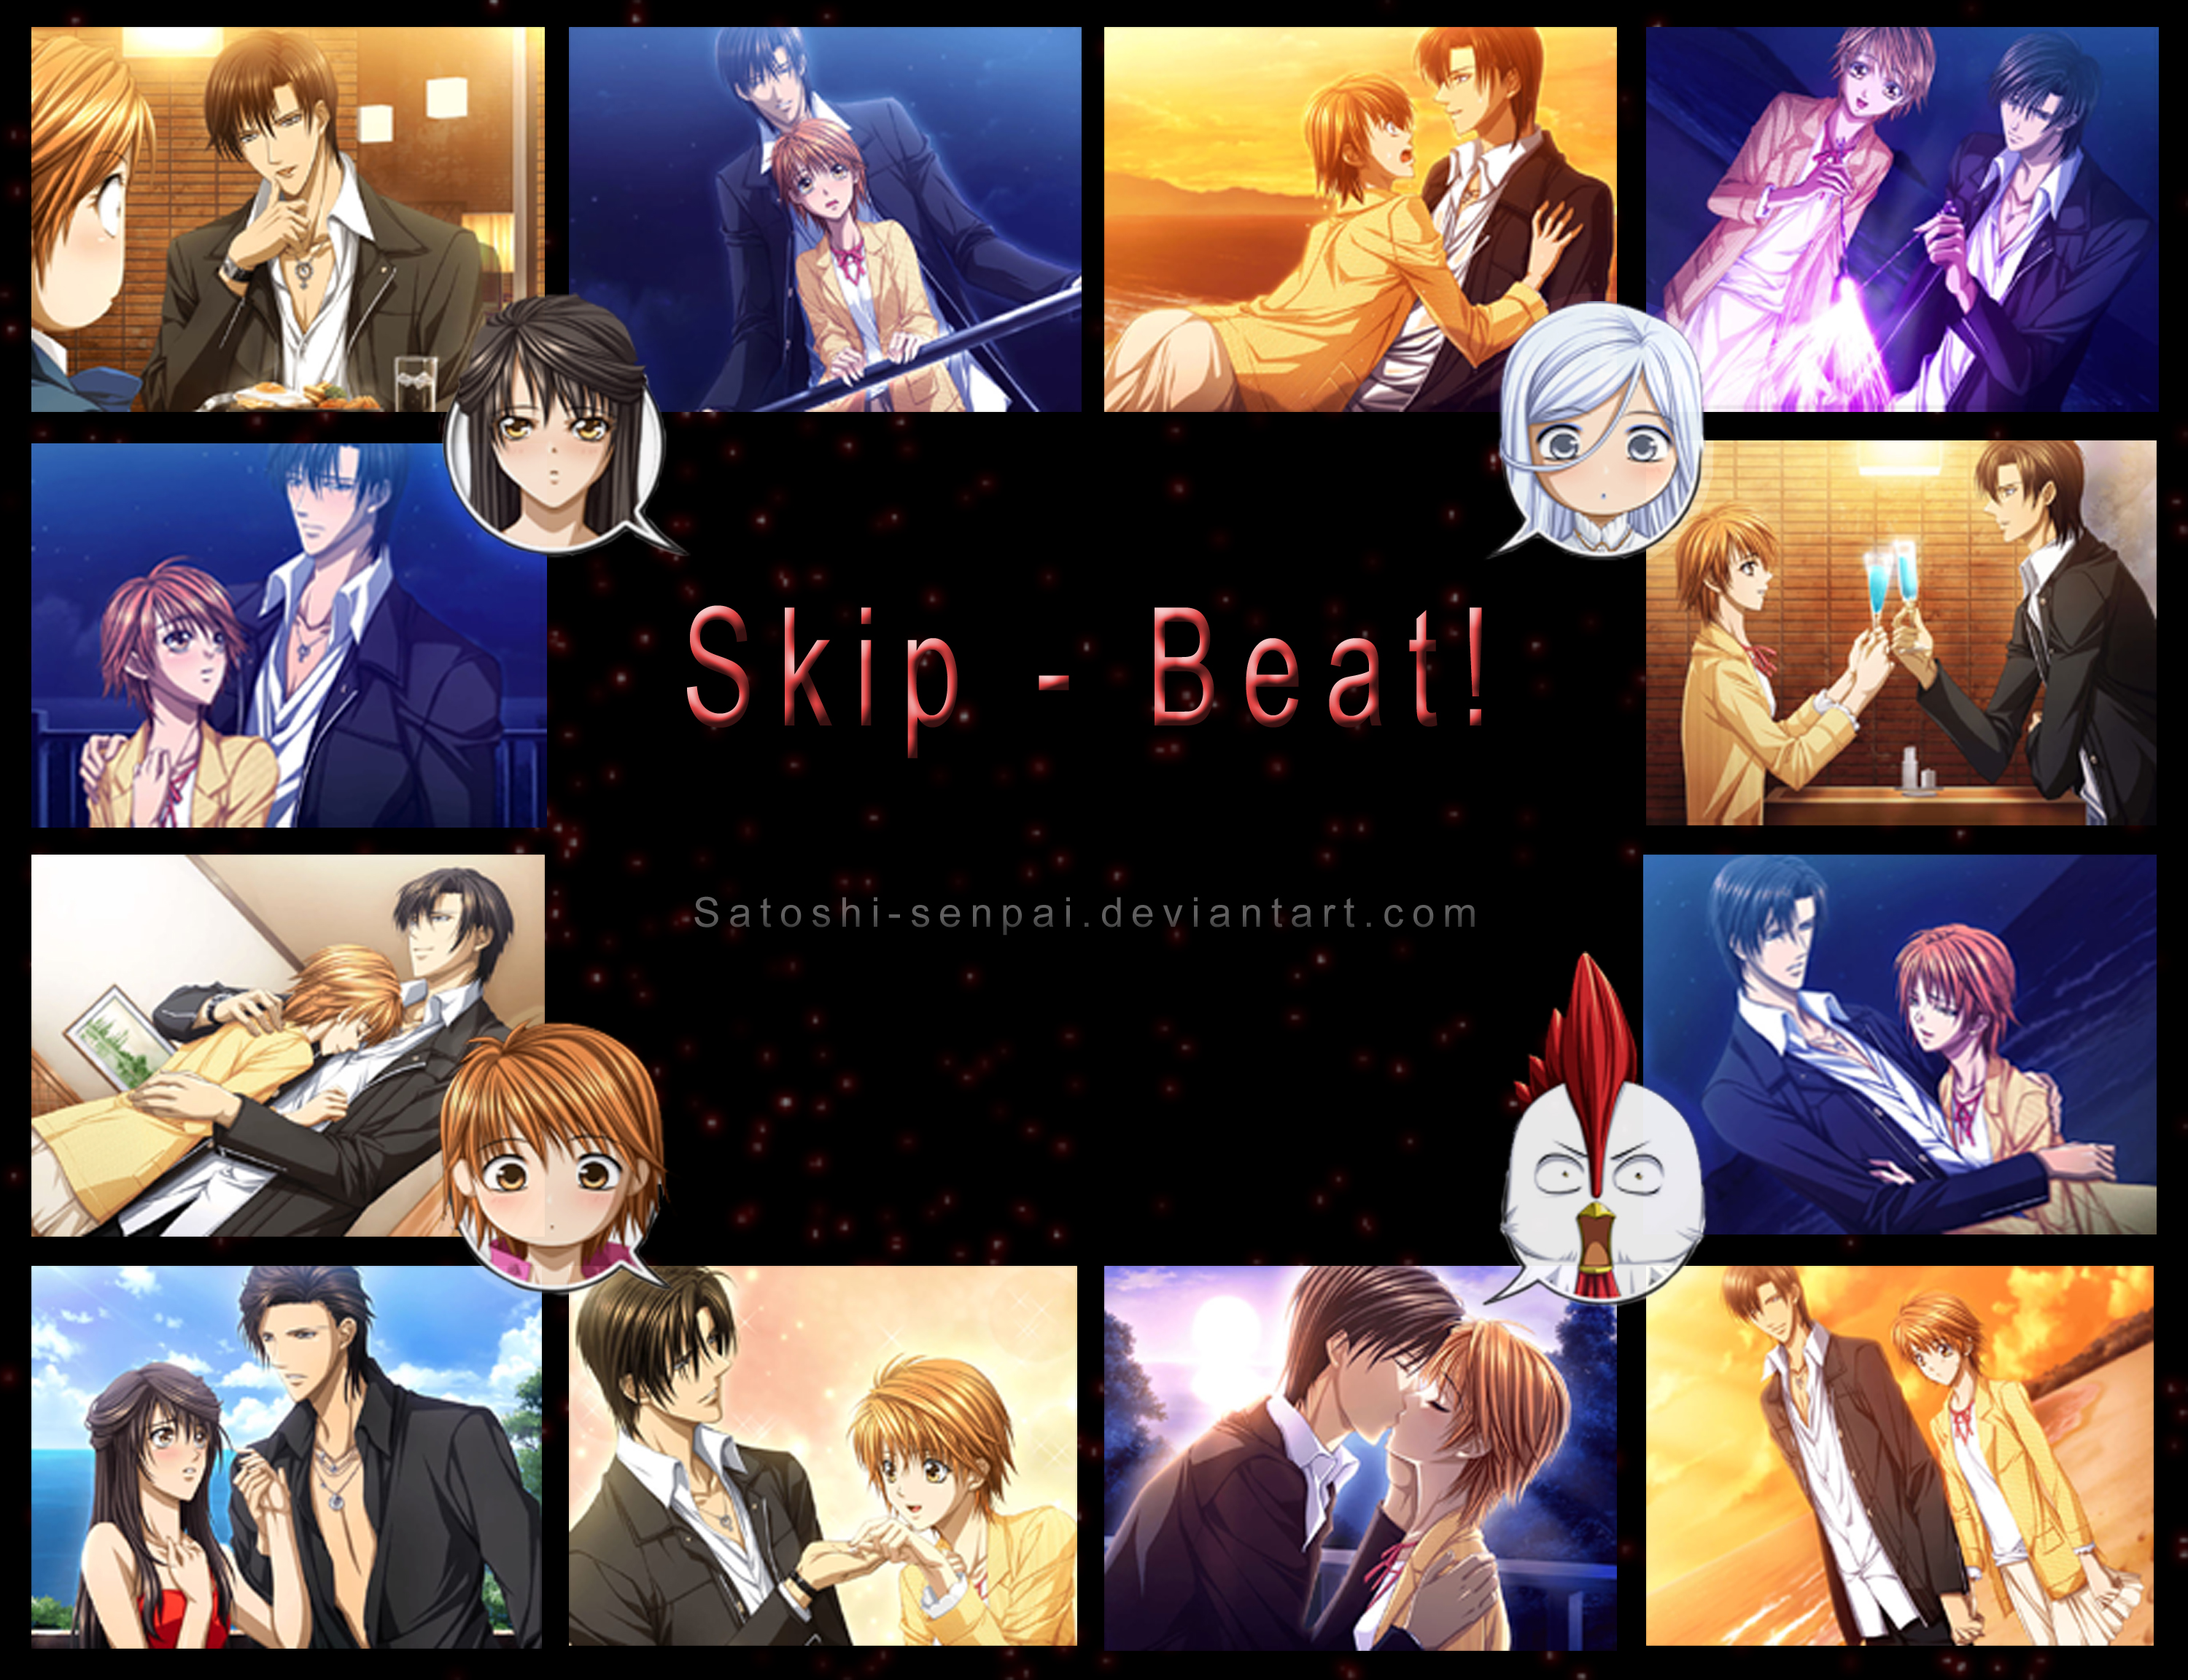 Skip beat, kyoko and sho